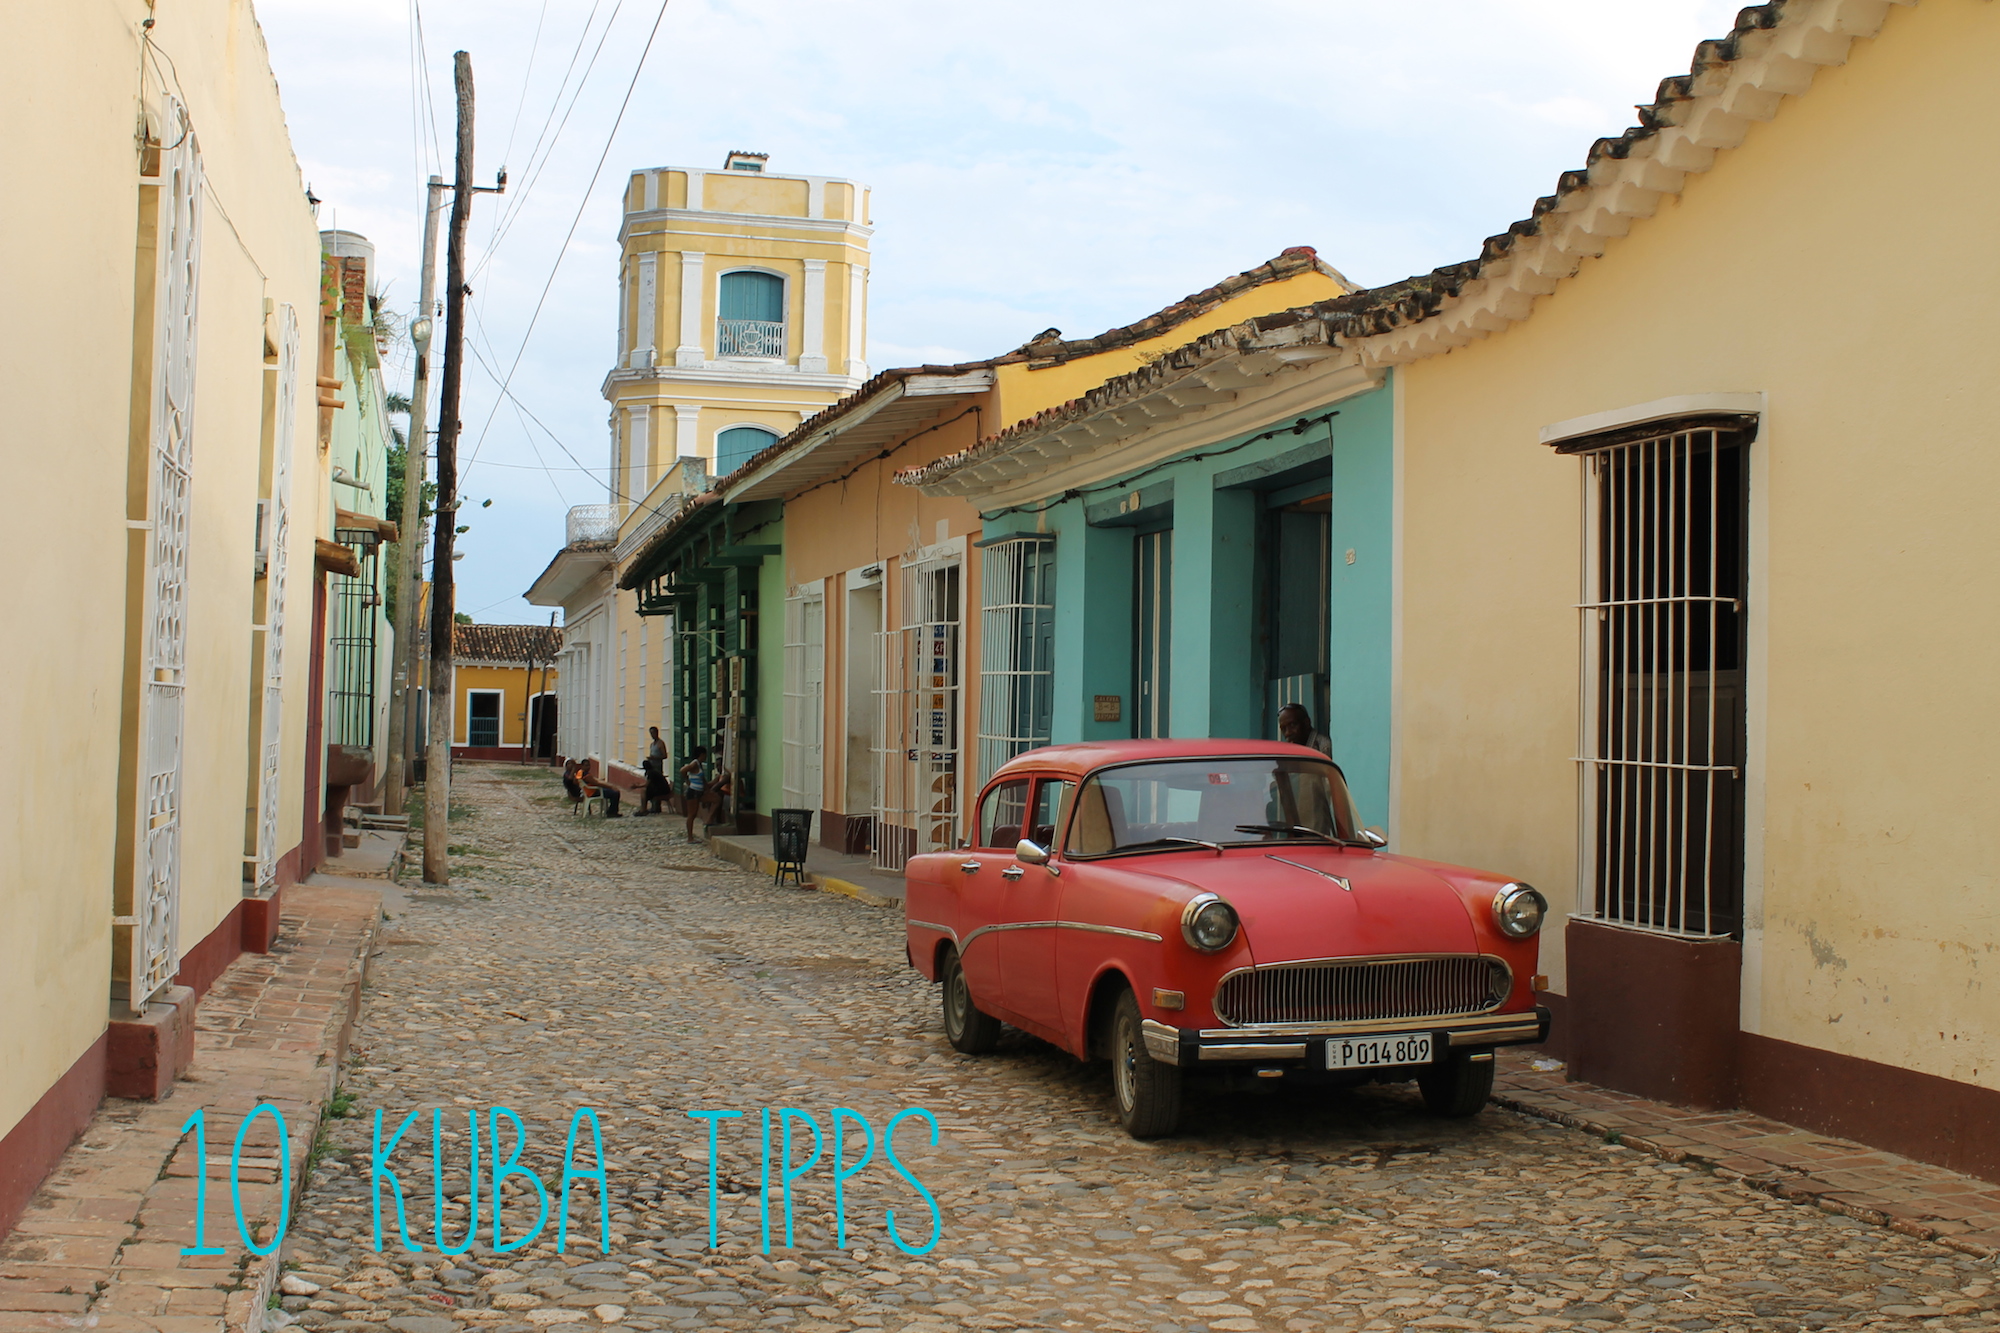 10 Kuba Tipps: Was man im Urlaub auf der Karibikinsel nicht verpassen sollte